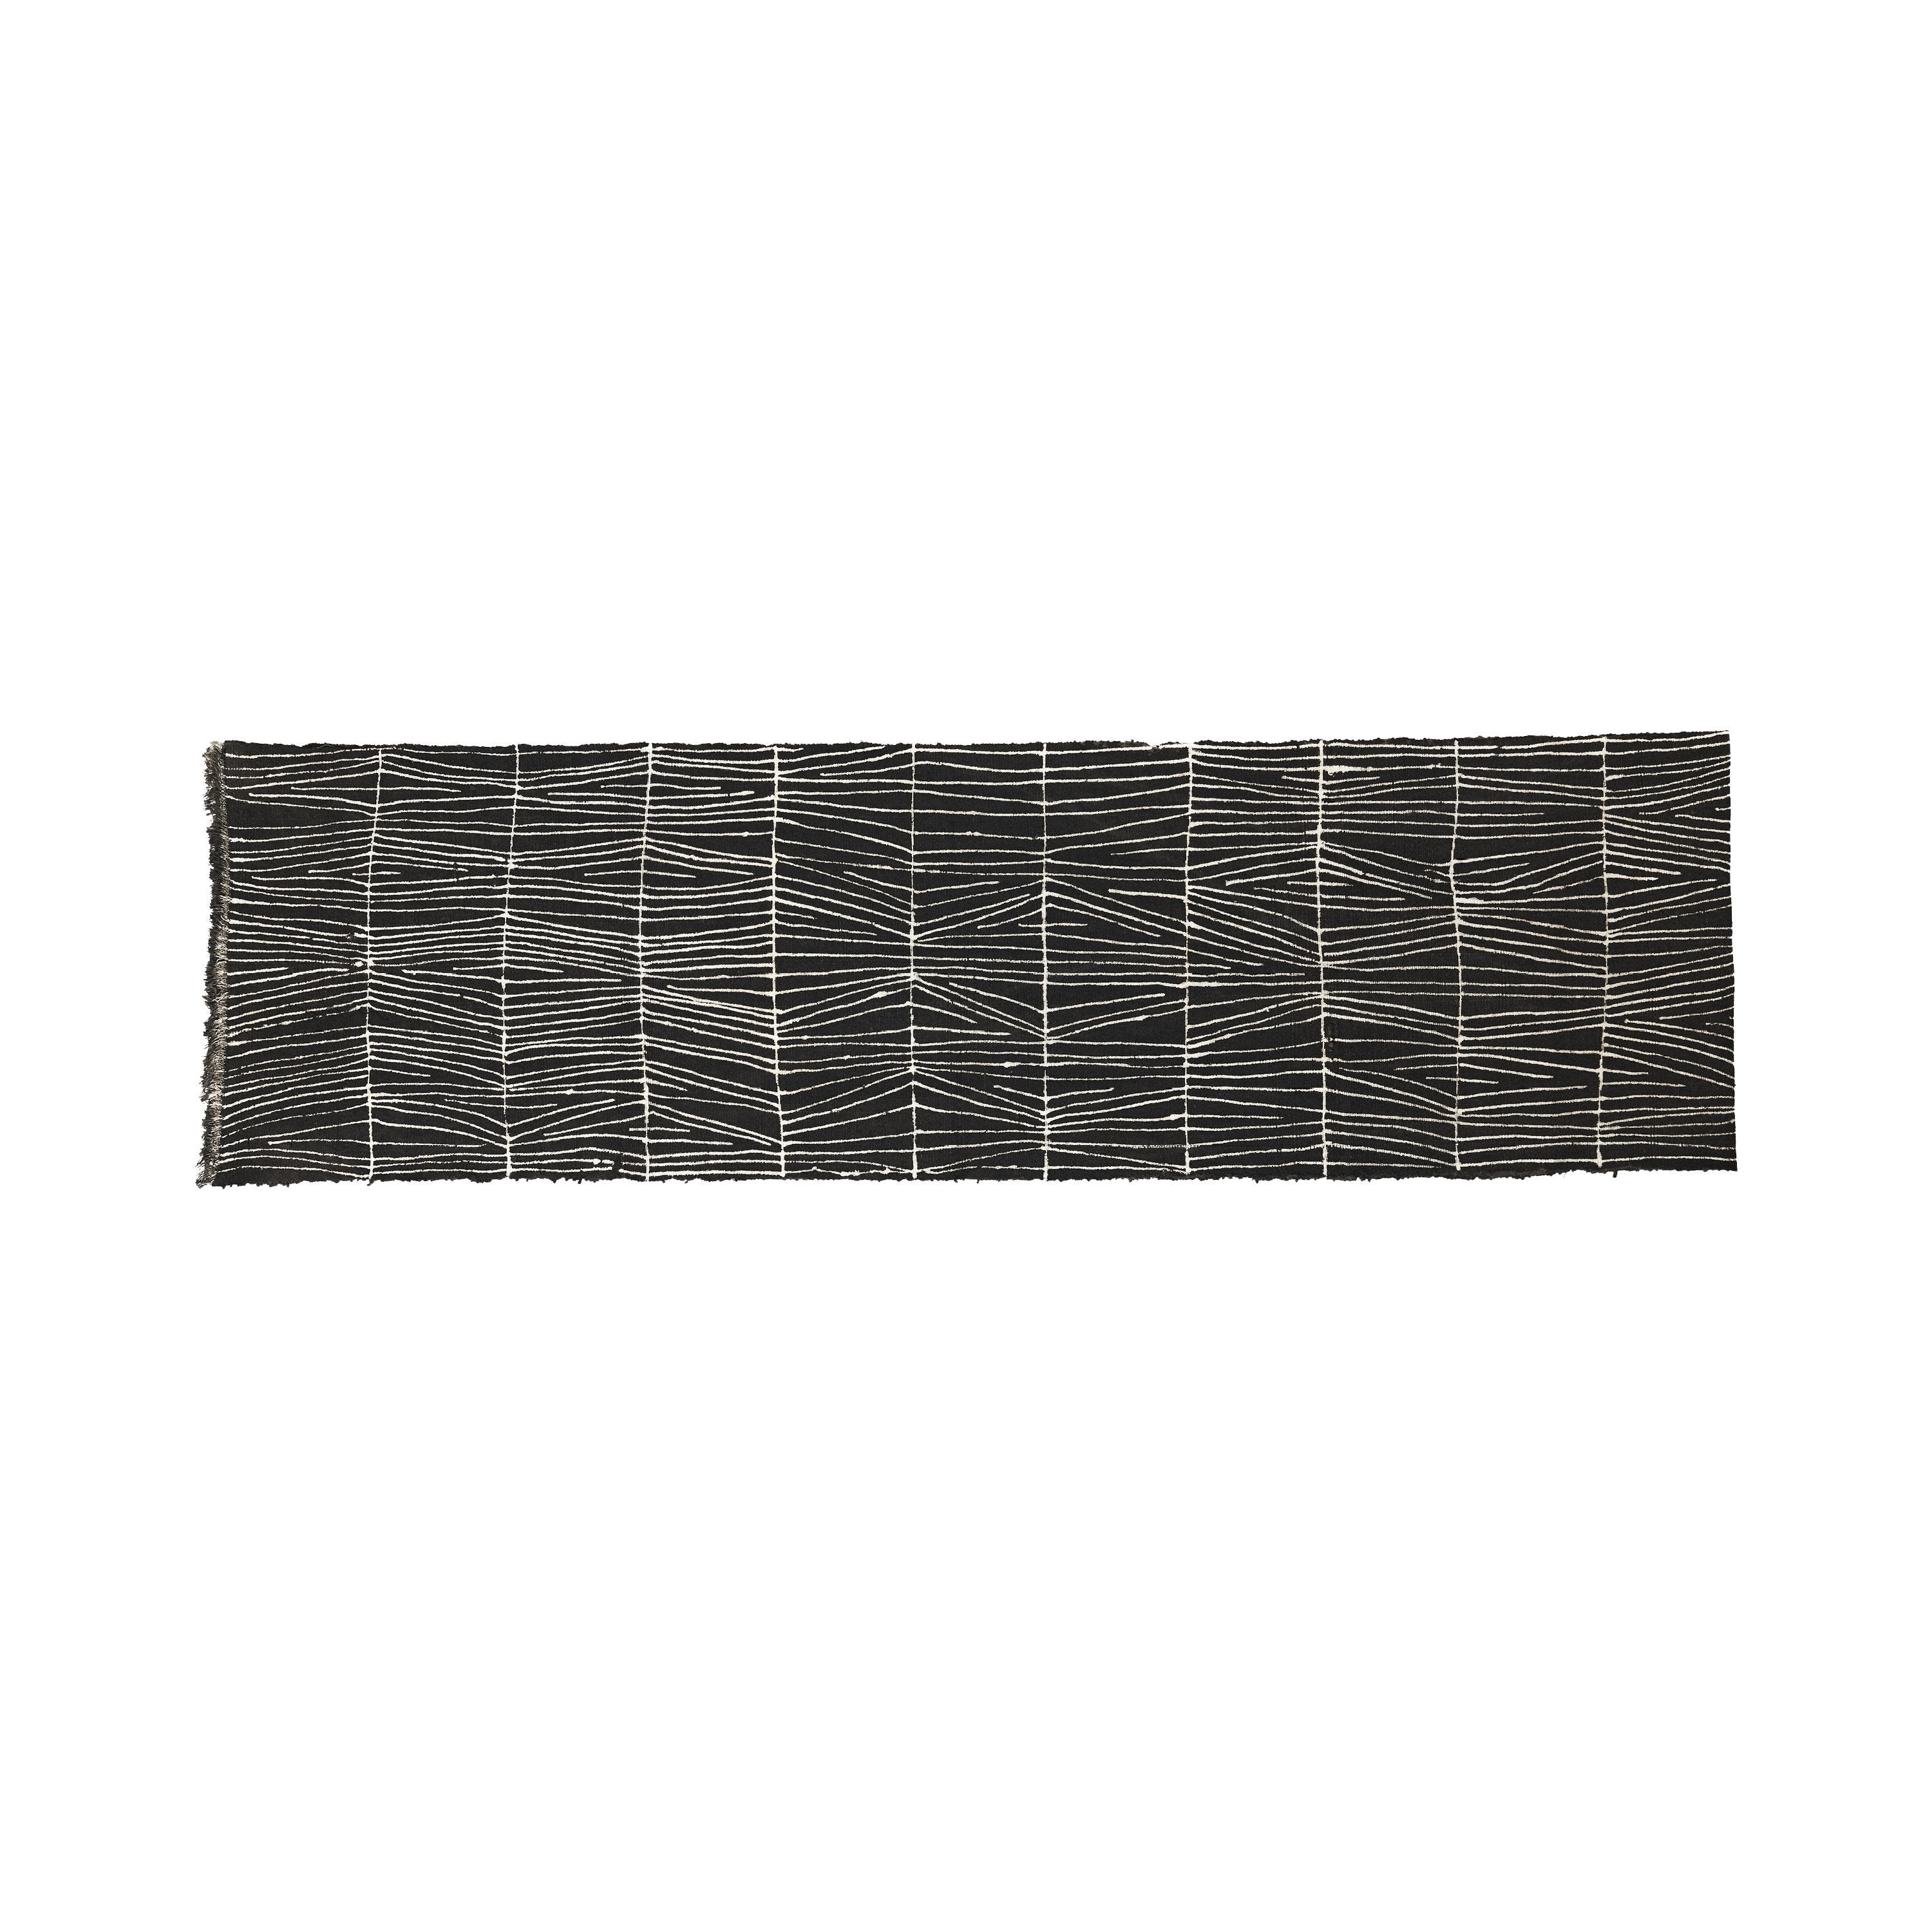 Hand-Dyed Table Runner | Black Table Linens Black Sticks 